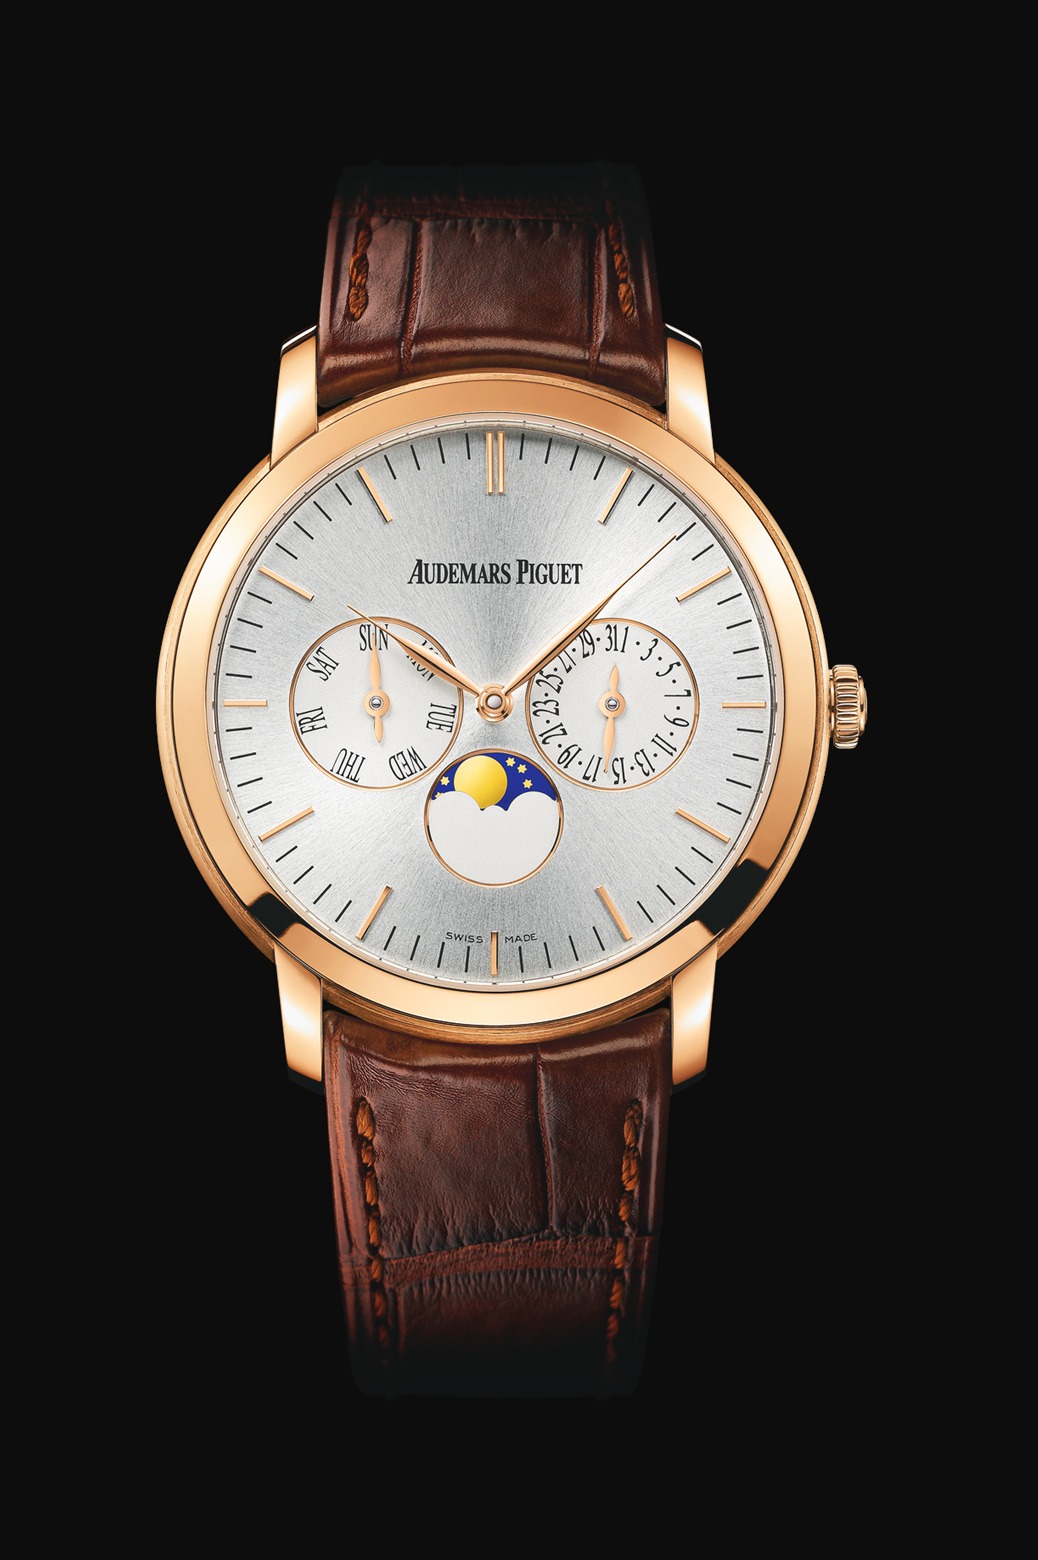 Audemars Piguet Jules Audemars Moon-Phase Calendar Pink Gold watch REF: 26385OR.OO.A088CR.01